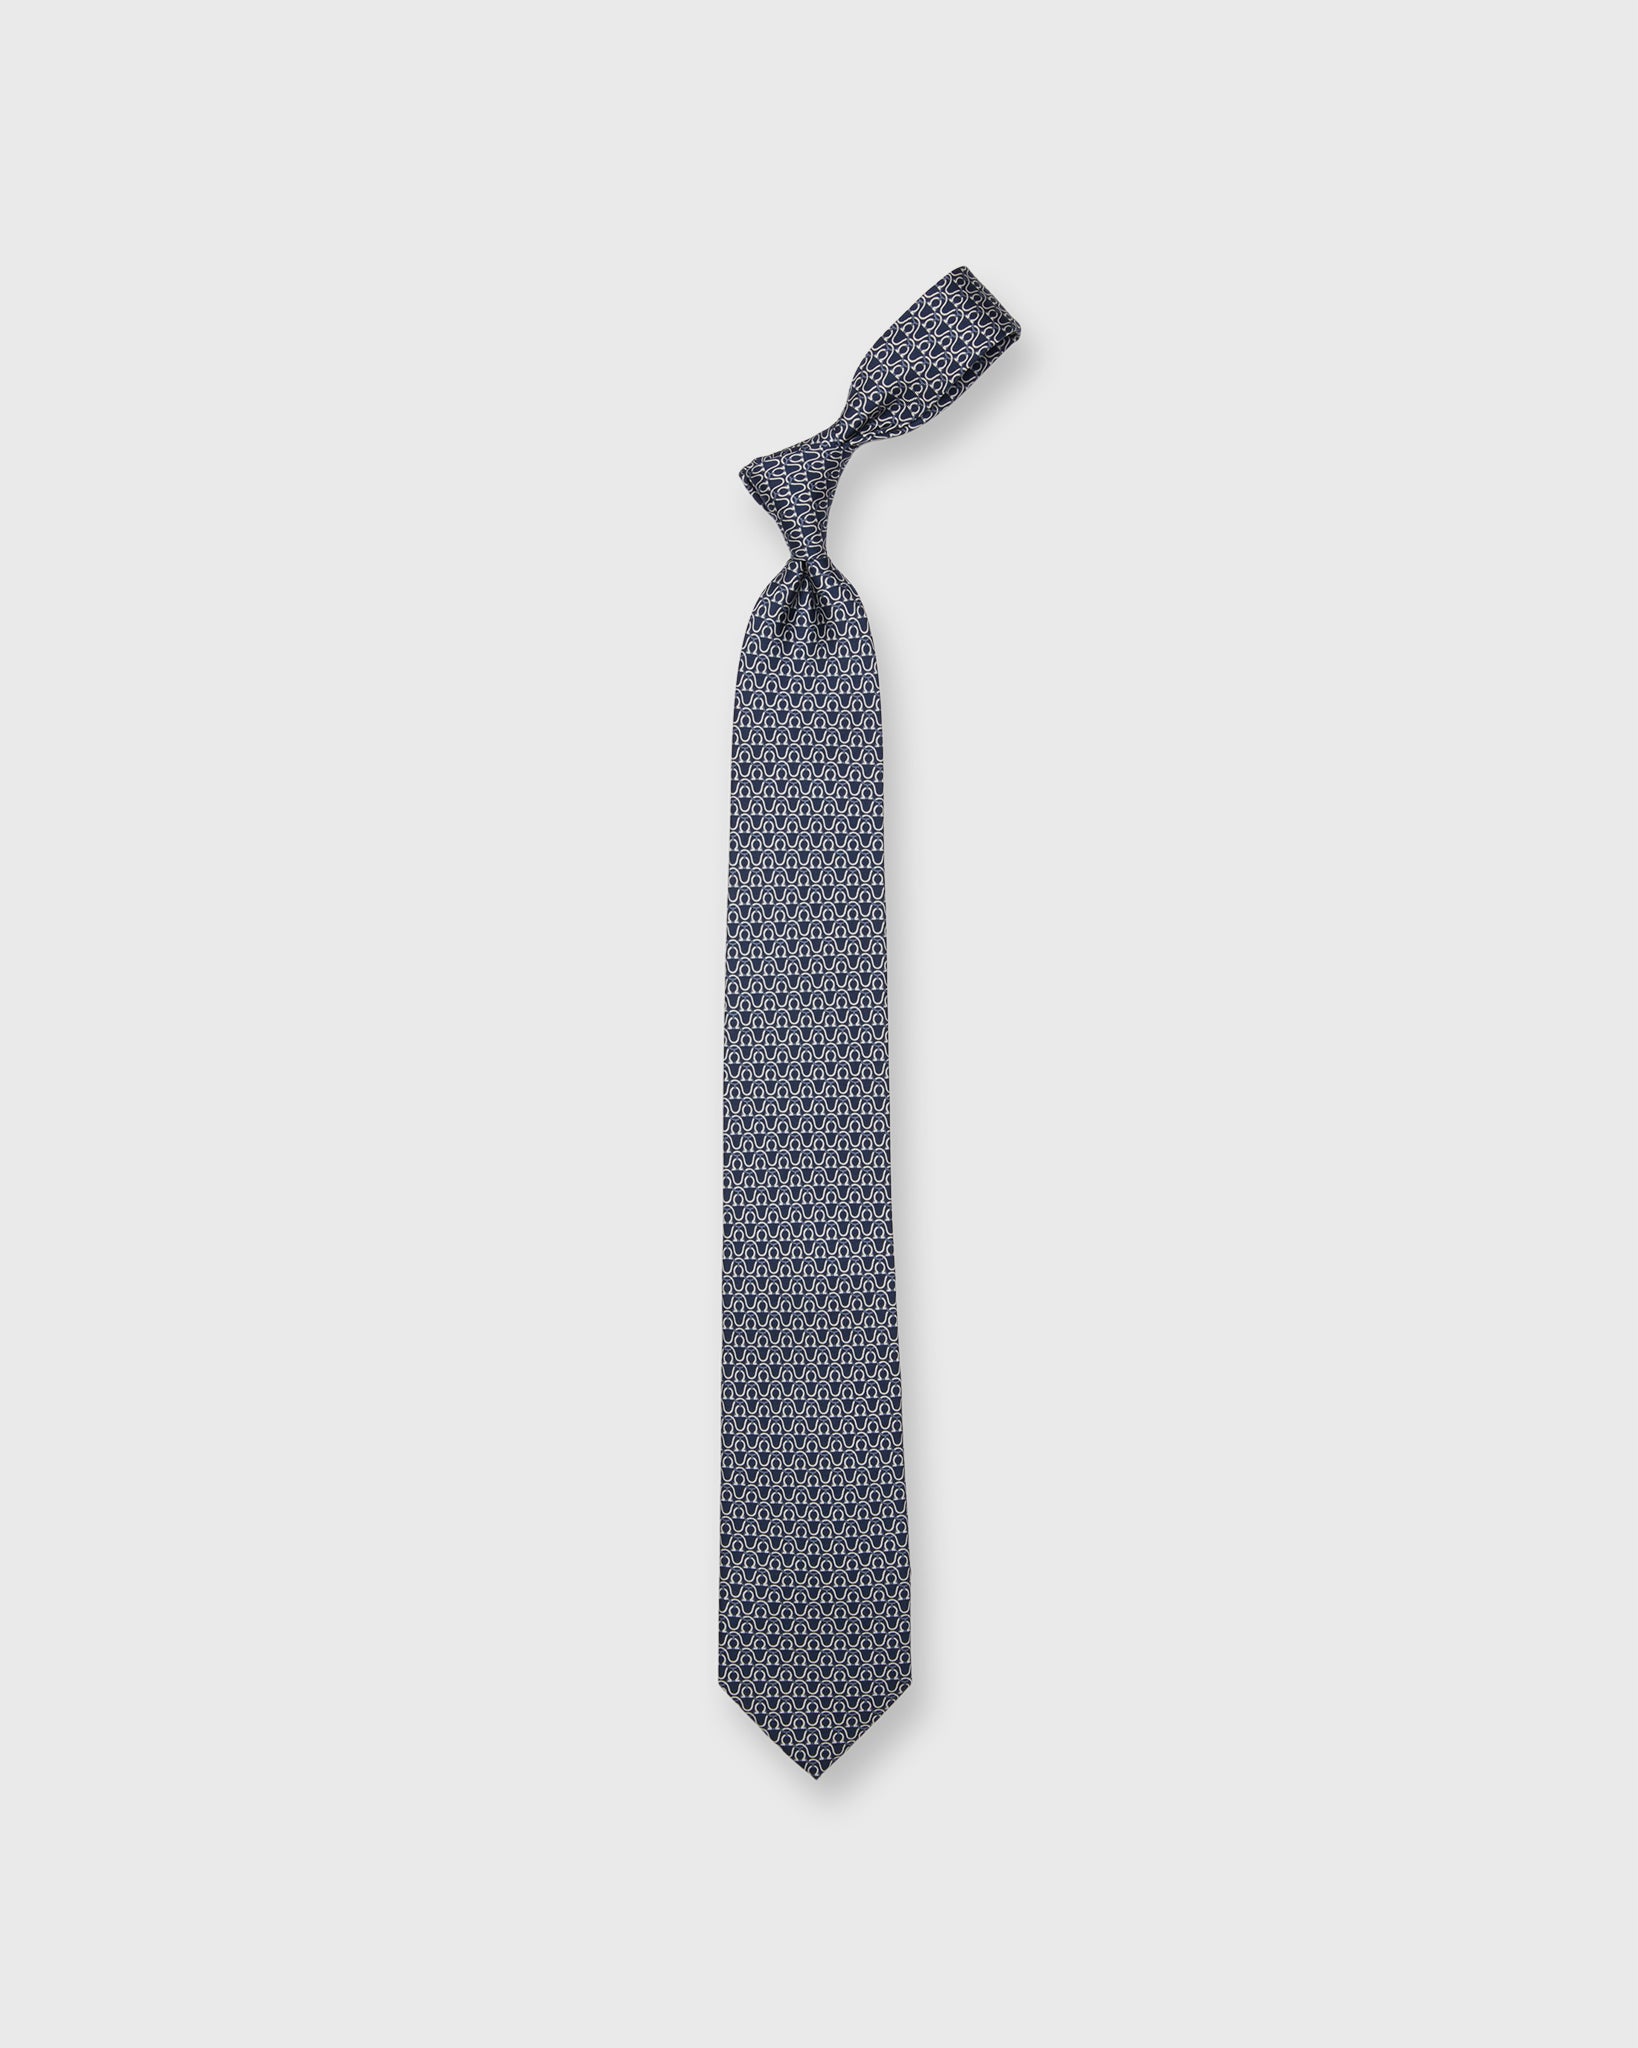 Silk Print Tie in Navy/Grey/White Stirrups